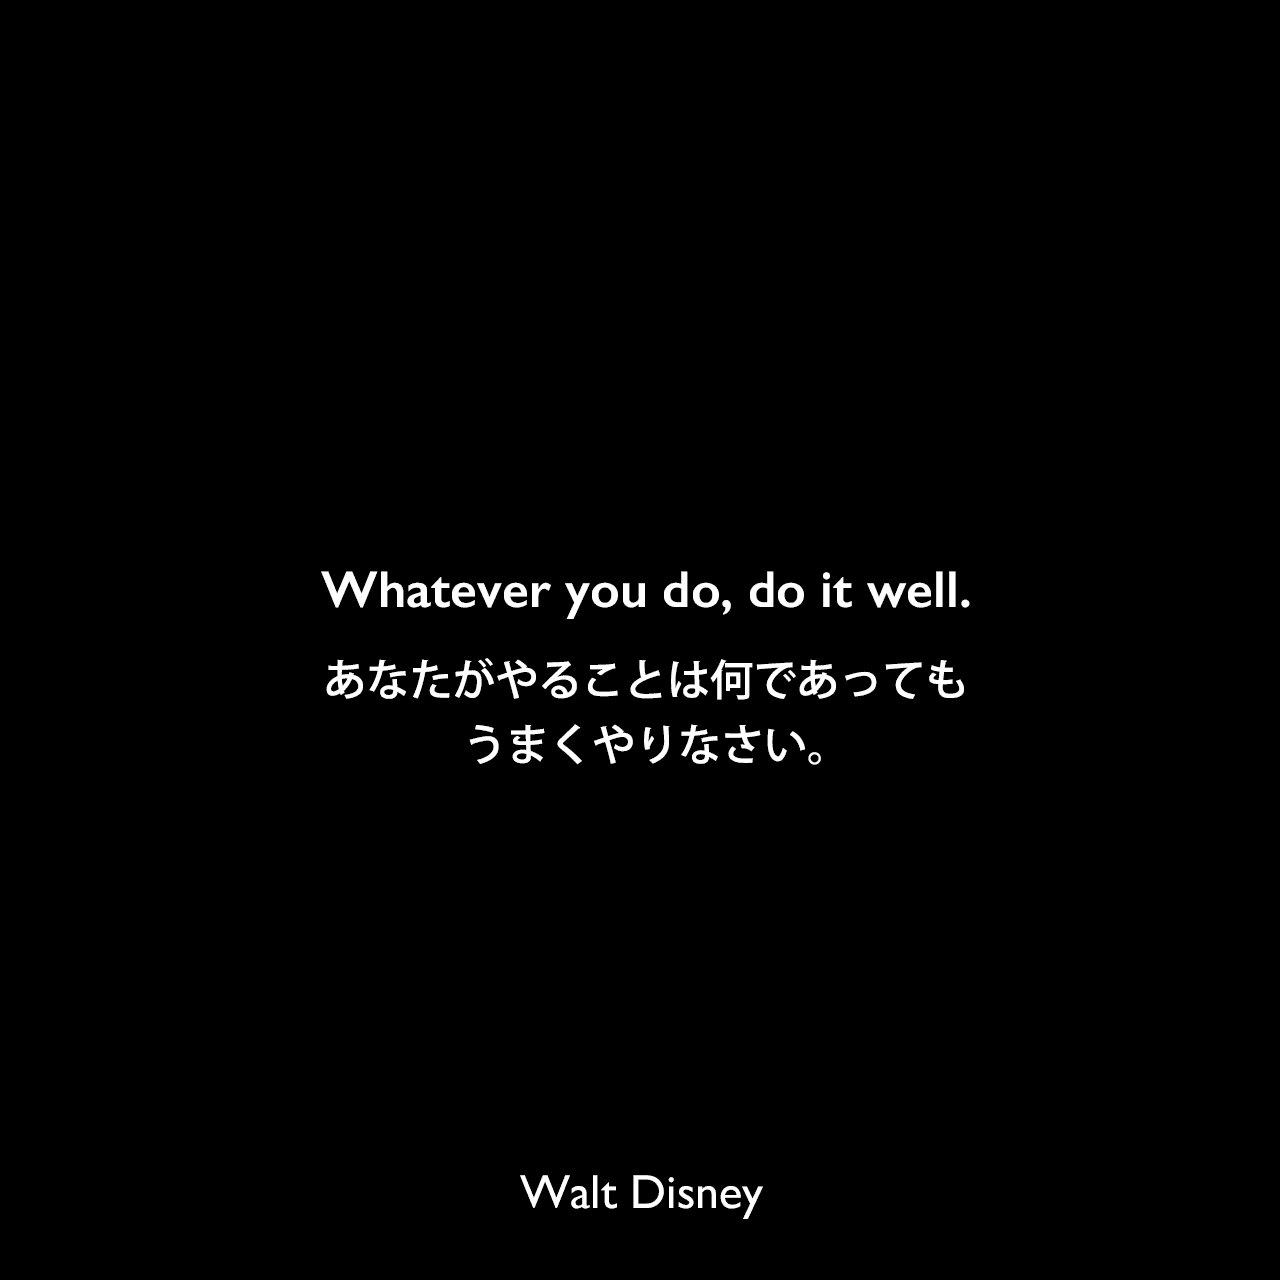 Whatever you do, do it well.あなたがやることは何であっても、うまくやりなさい。Walt Disney